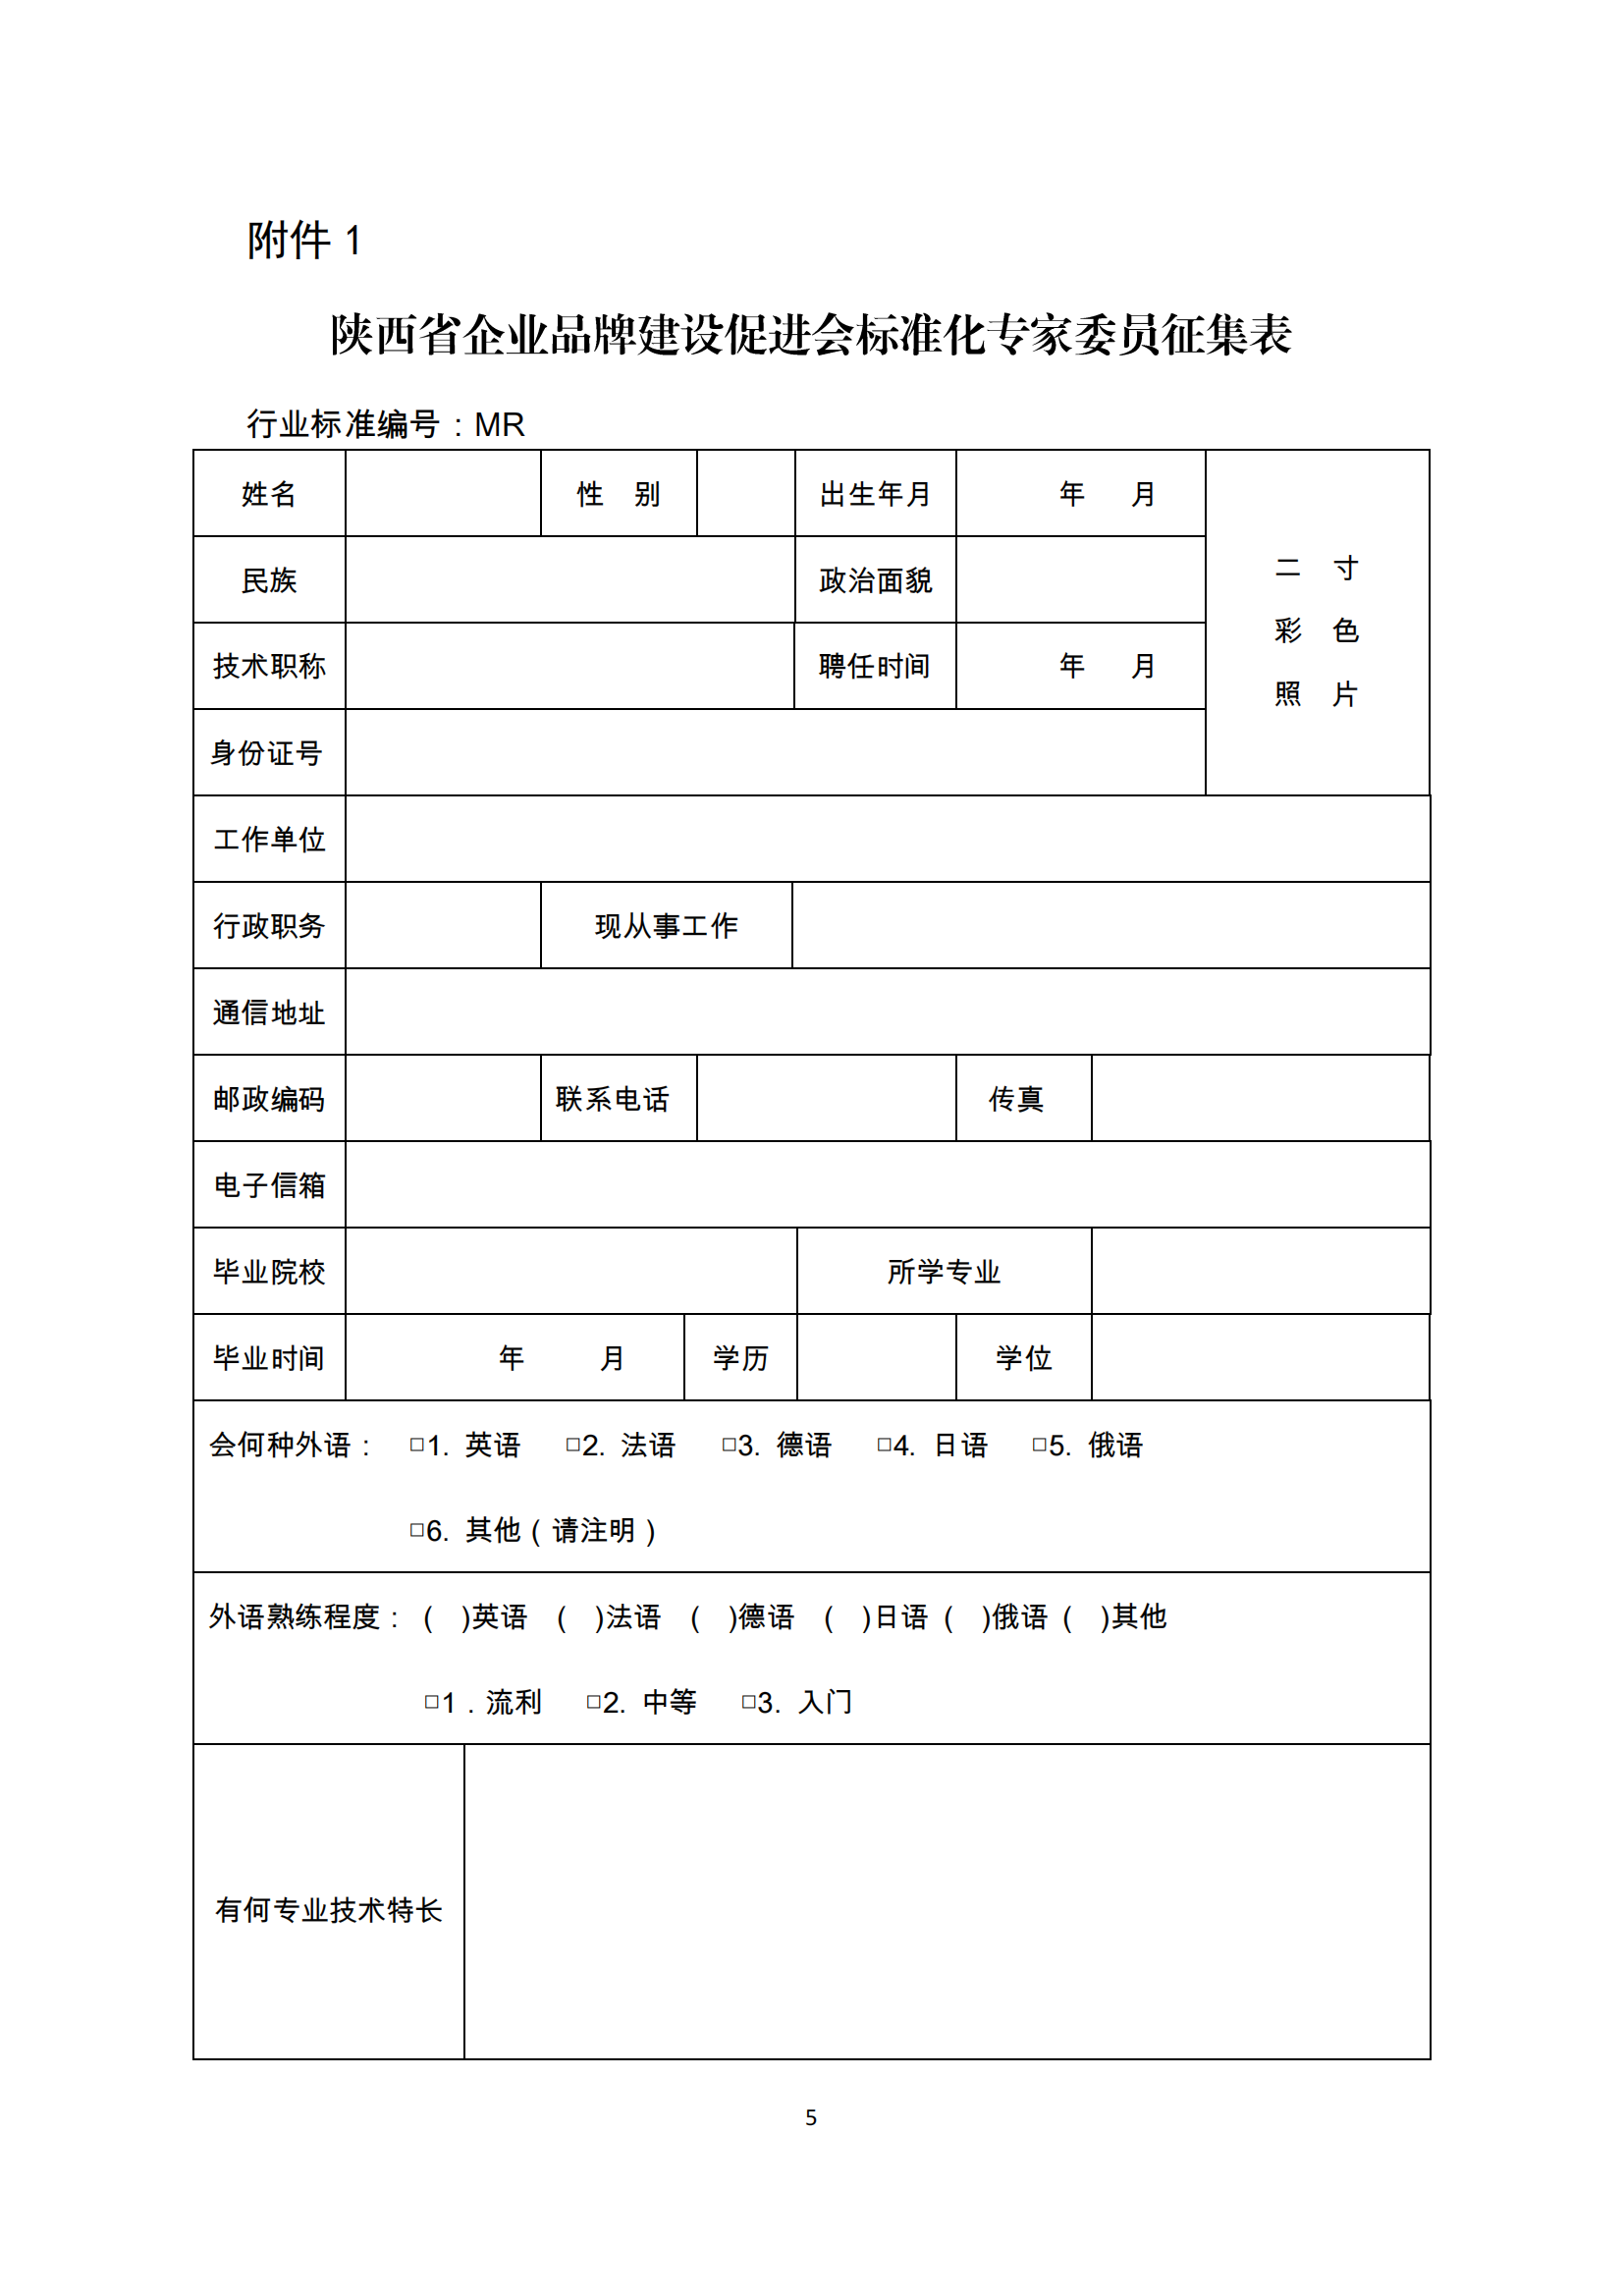 陕标委22-2 关于征集标准化专家的函220809 -挂网_04.png